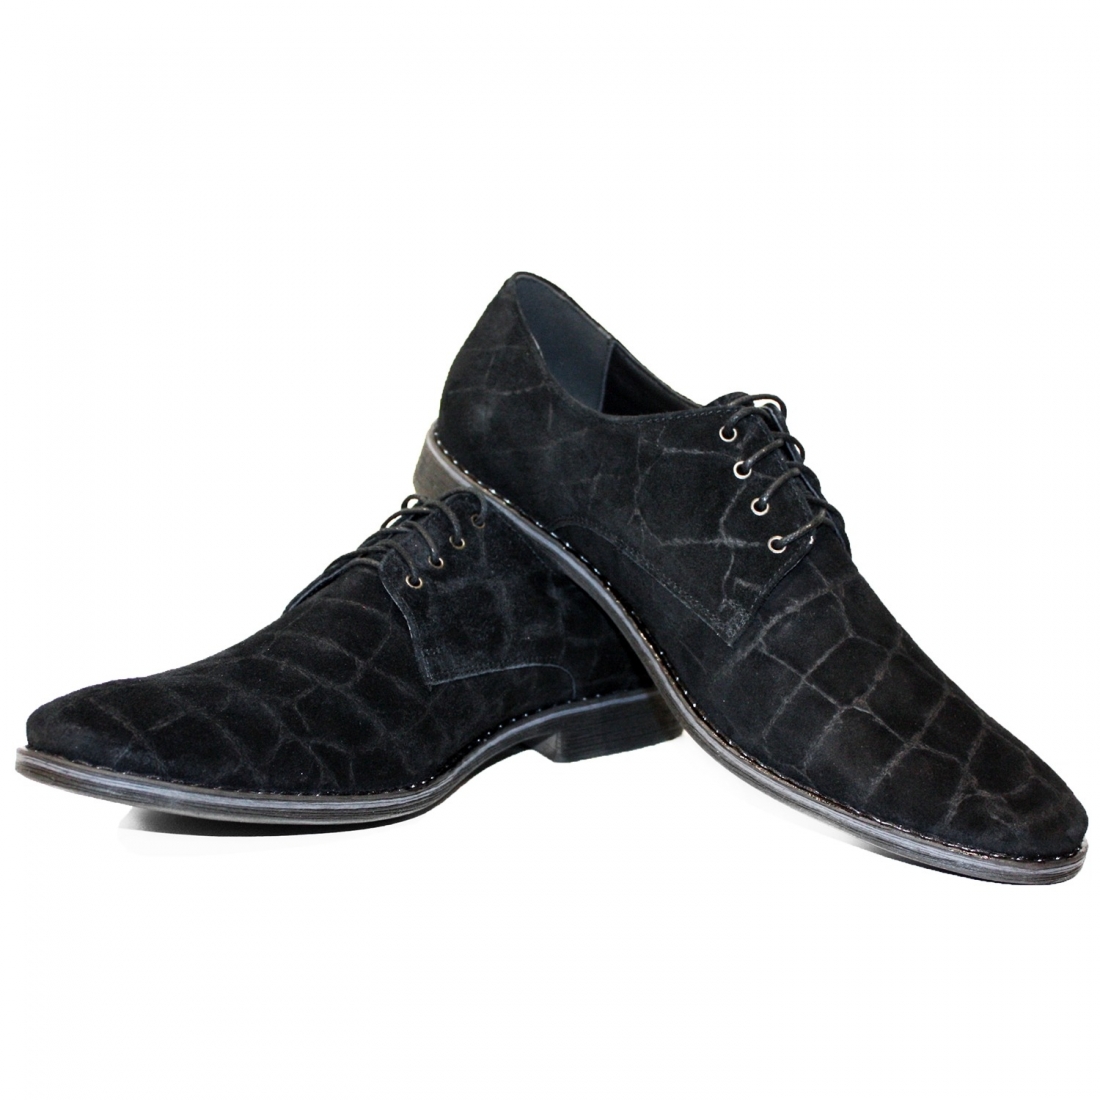 Modello Nogello - Scarpe Classiche - Handmade Colorful Italian Leather Shoes